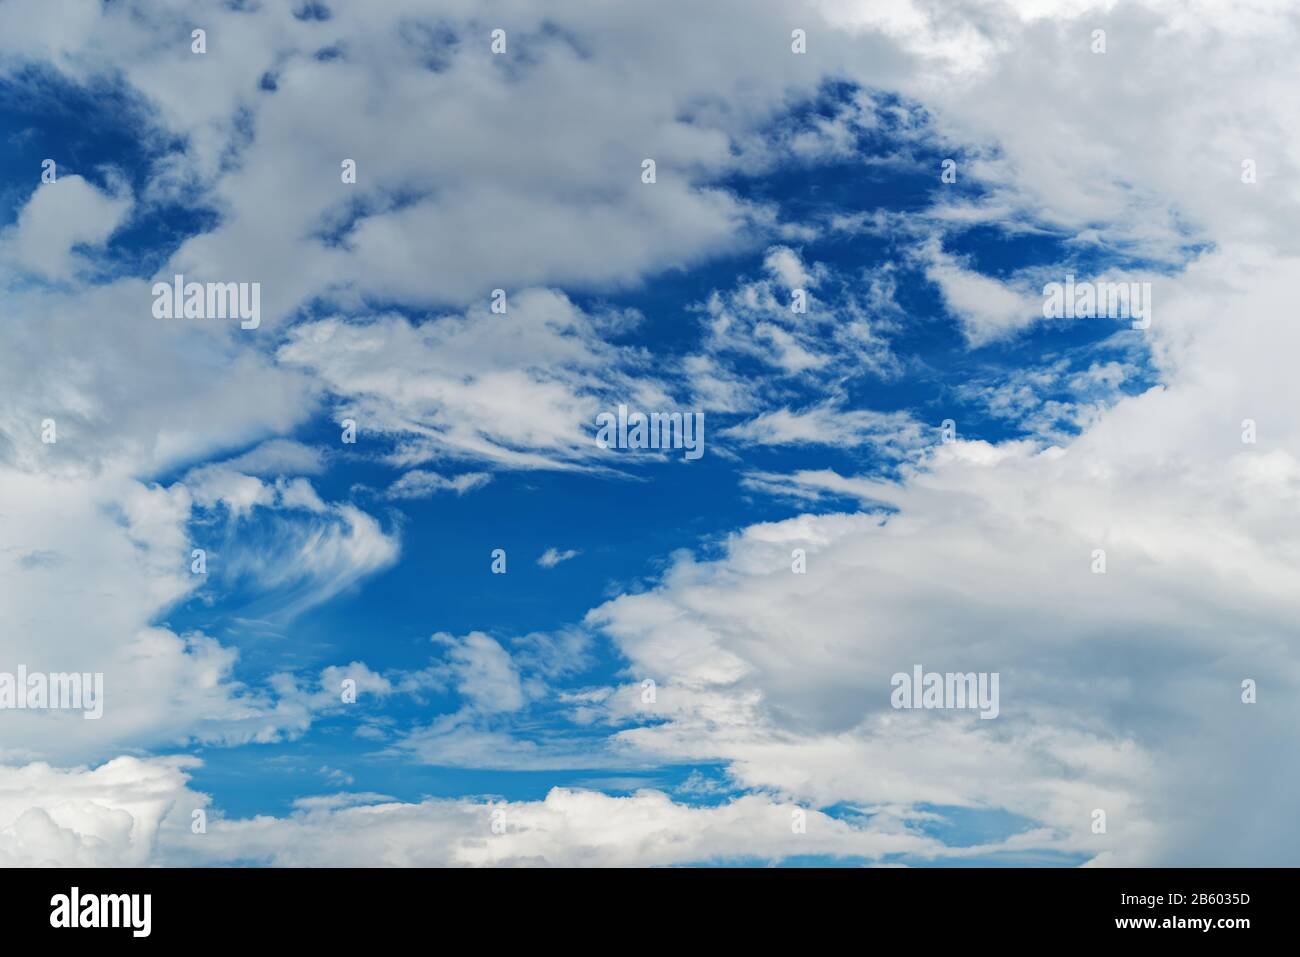 Vue en bas angle du fond bleu du ciel avec de minuscules nuages Photo Stock  - Alamy